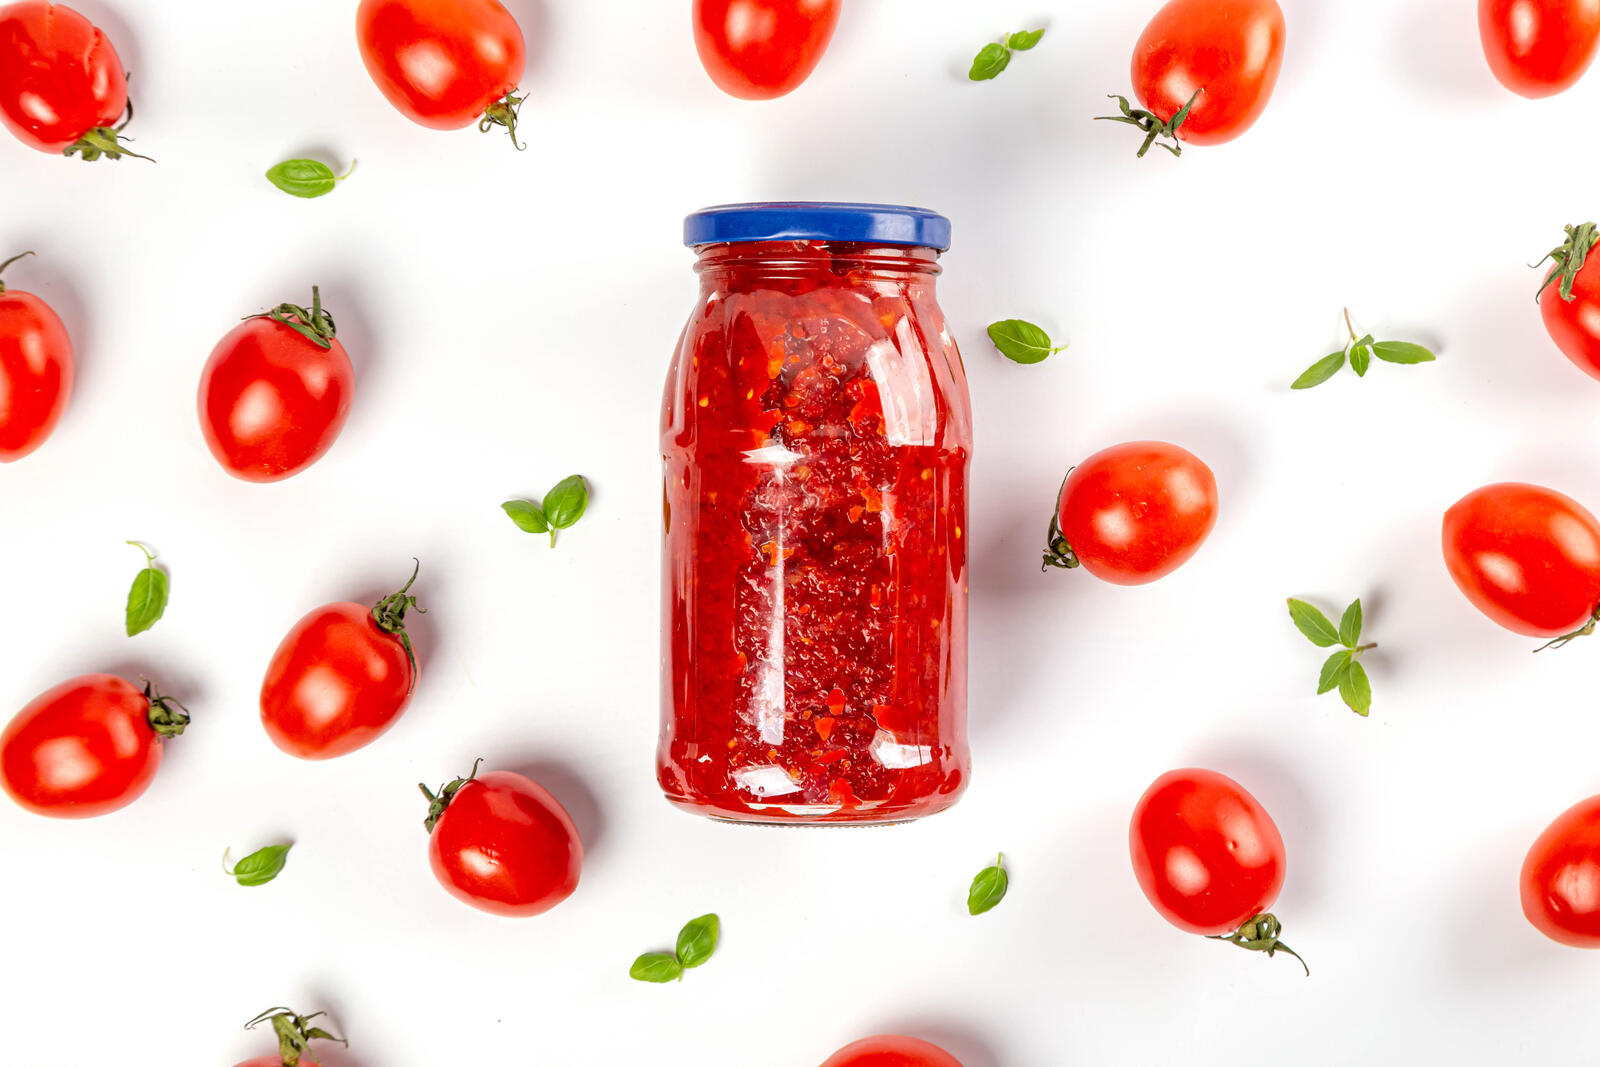 Wallpapers food tomatoes jar on the desktop